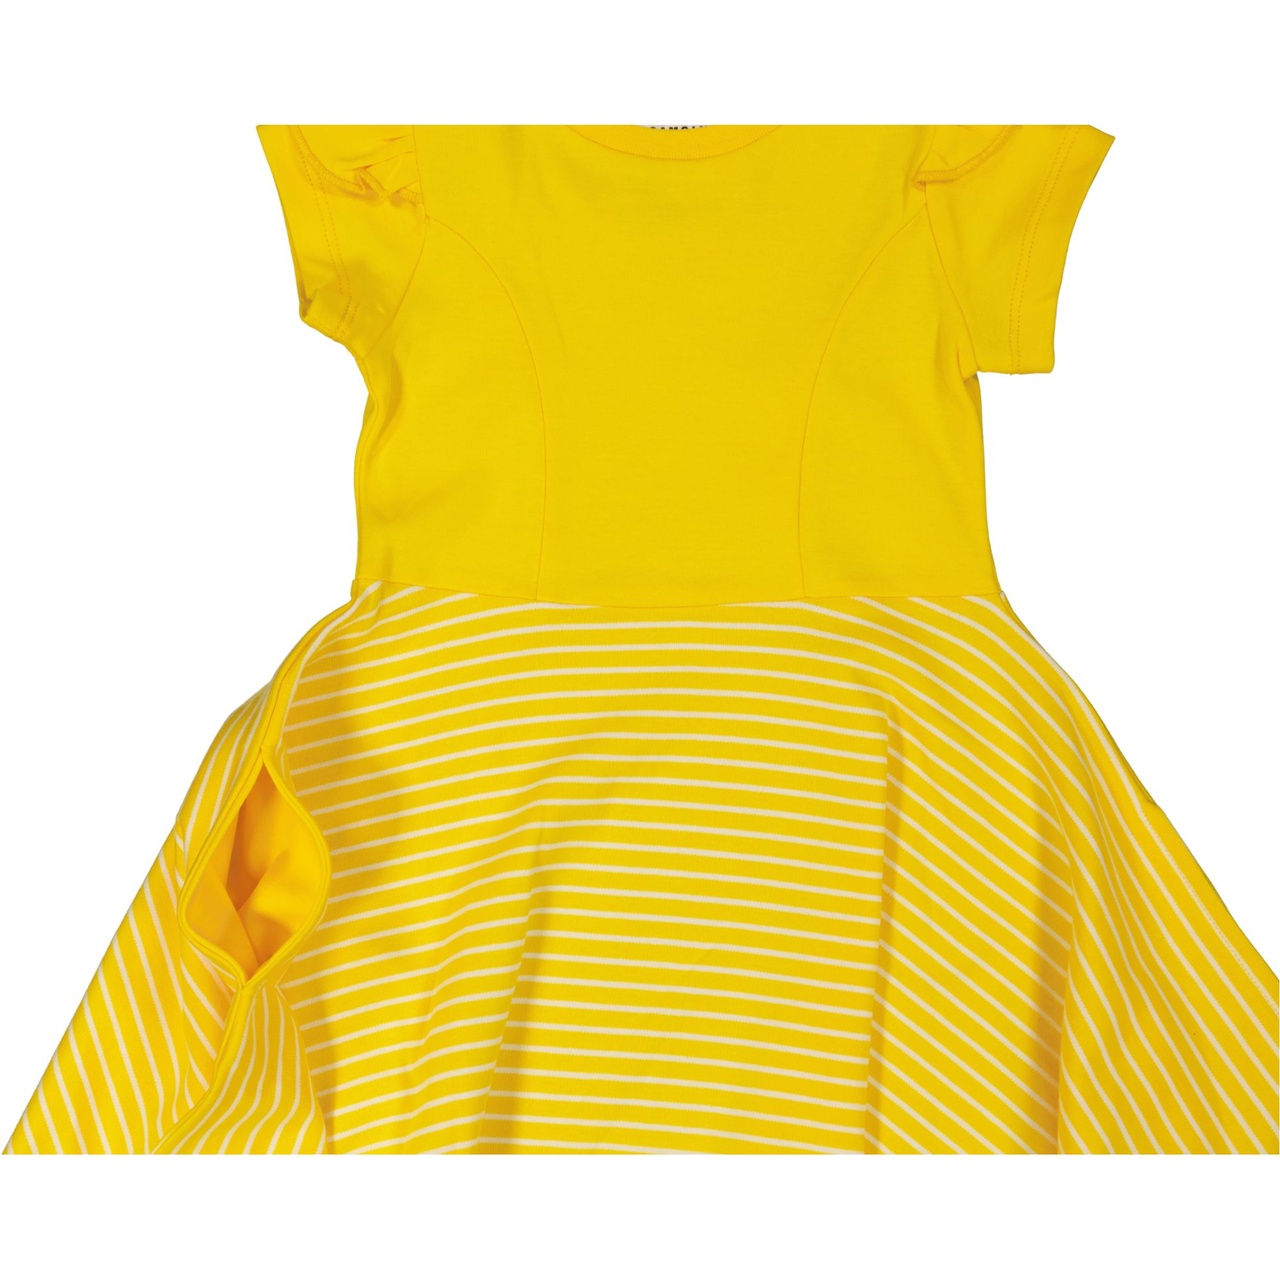 Flared dress Yellow/white  86/92